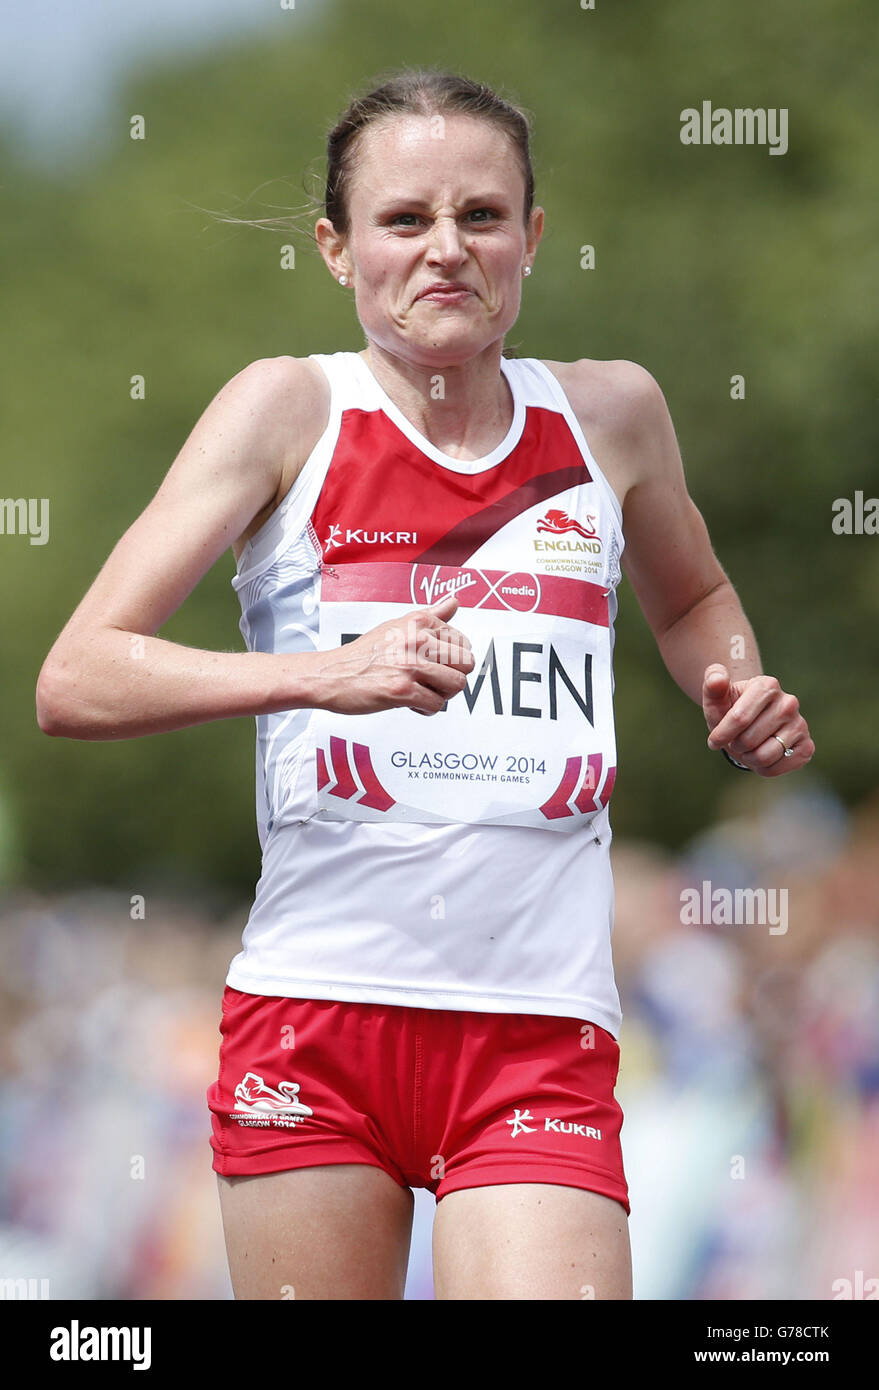 Inghilterra Louise Damen durante la Maratona degli uomini durante i Giochi del Commonwealth 2014 a Glasgow durante i Giochi del Commonwealth 2014 a Glasgow. Foto Stock